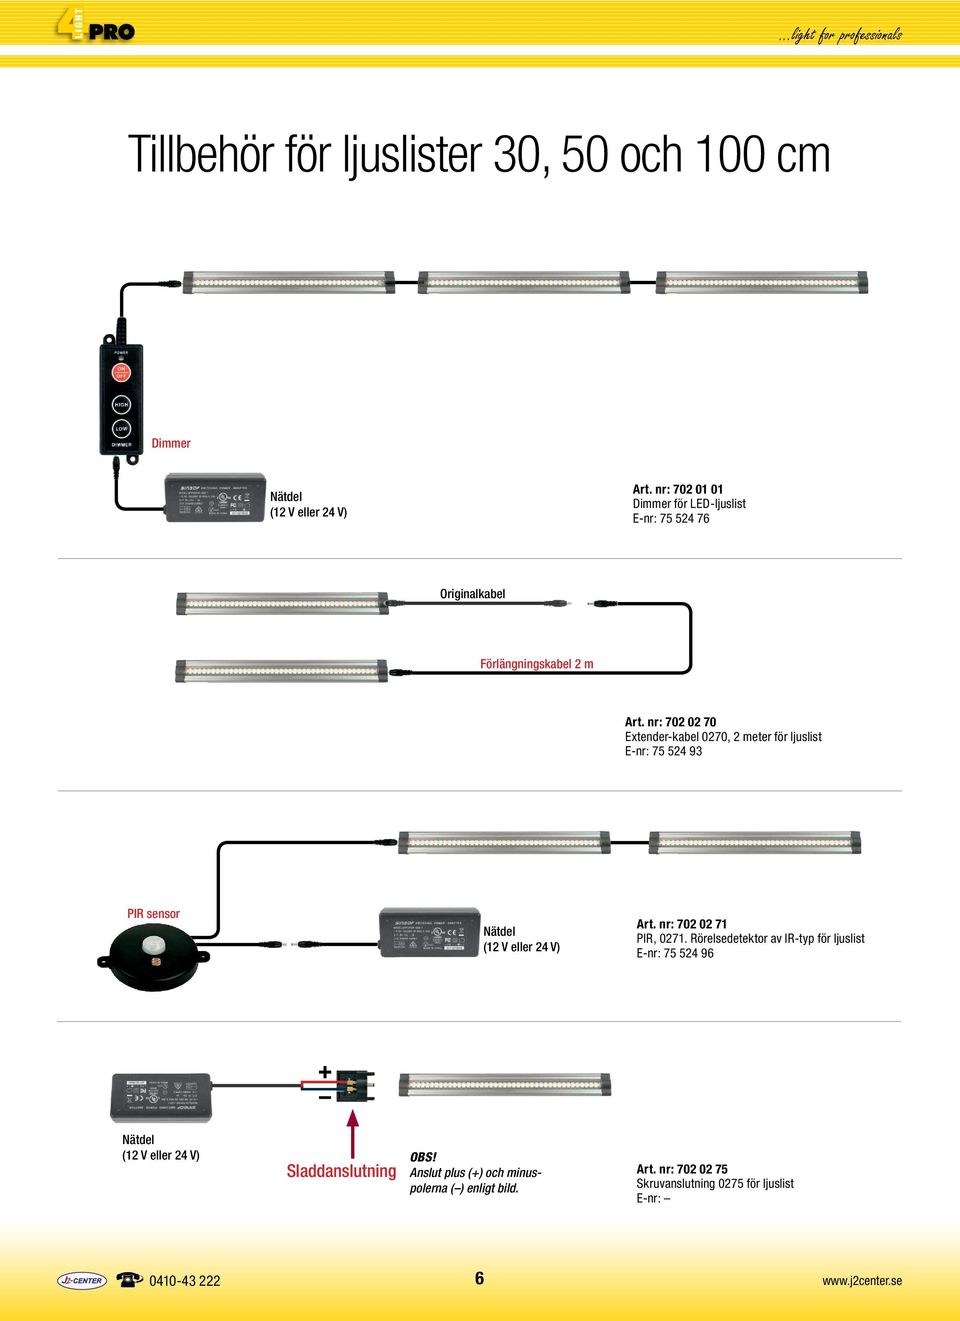 nr: 702 02 70 Extender-kabel 0270, 2 meter för ljuslist E-nr: 75 524 93 PIR sensor Nätdel (12 V eller 24 V) Art.